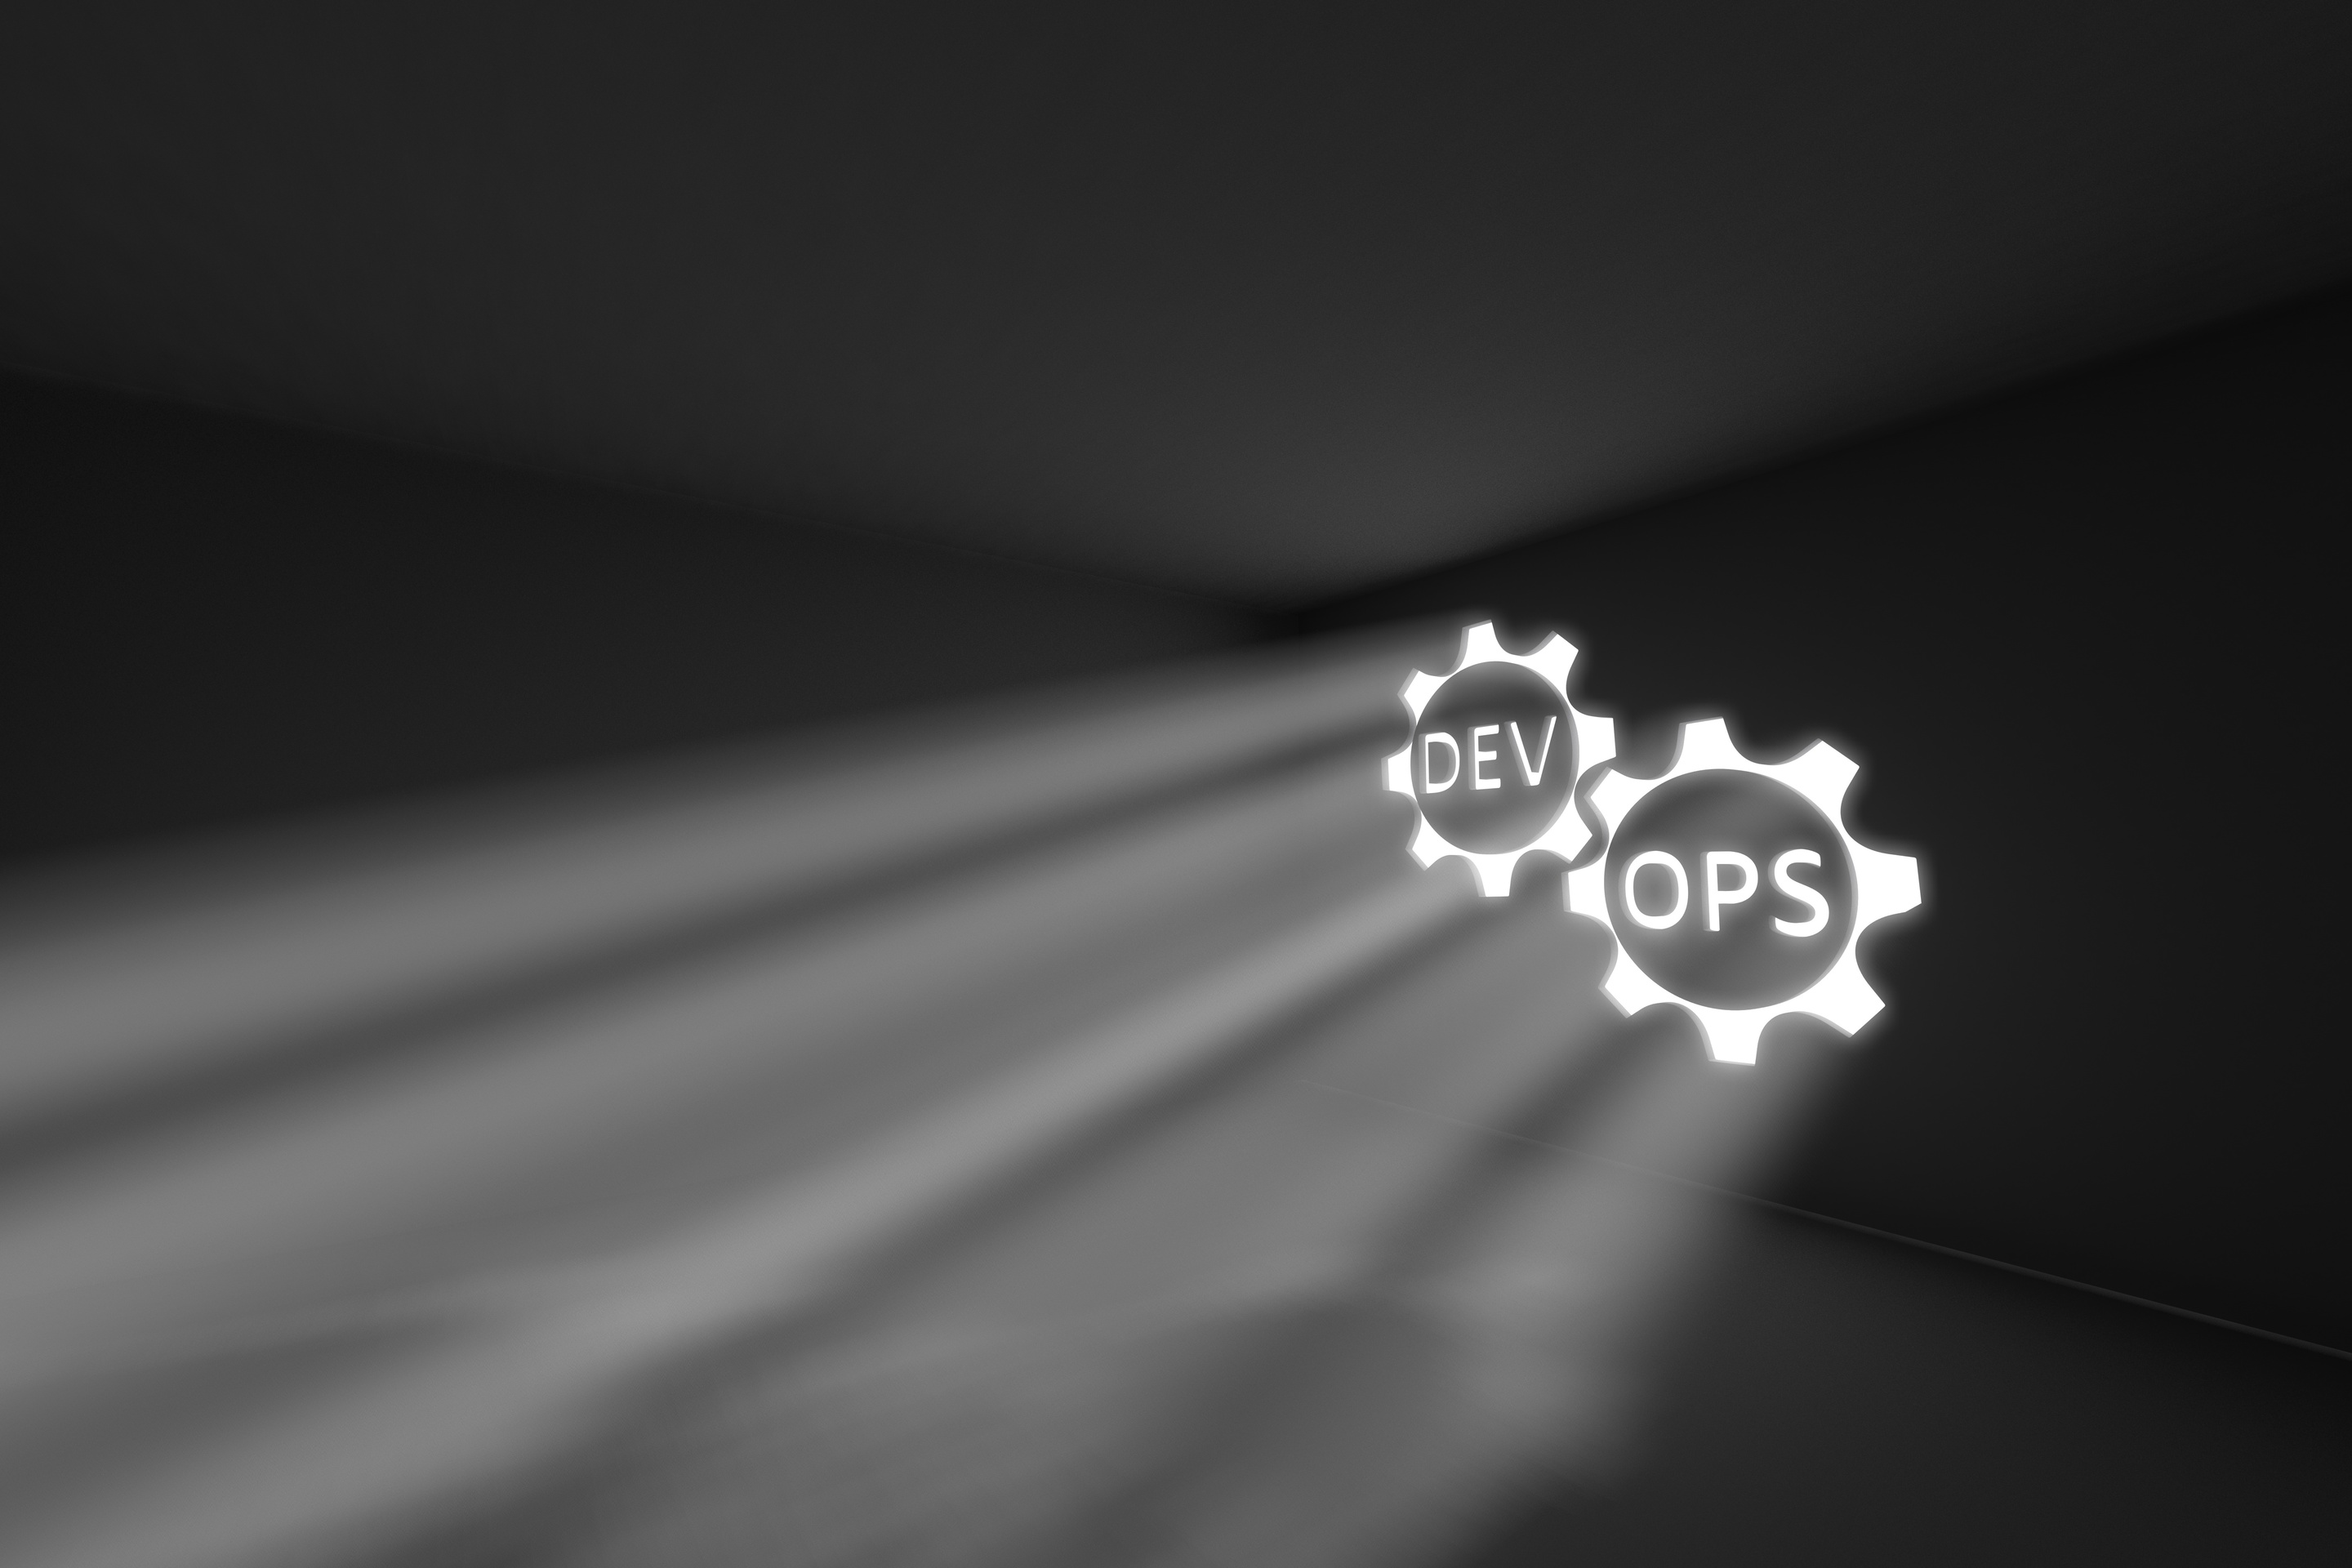 DevOps rays volume light concept 3d illustration